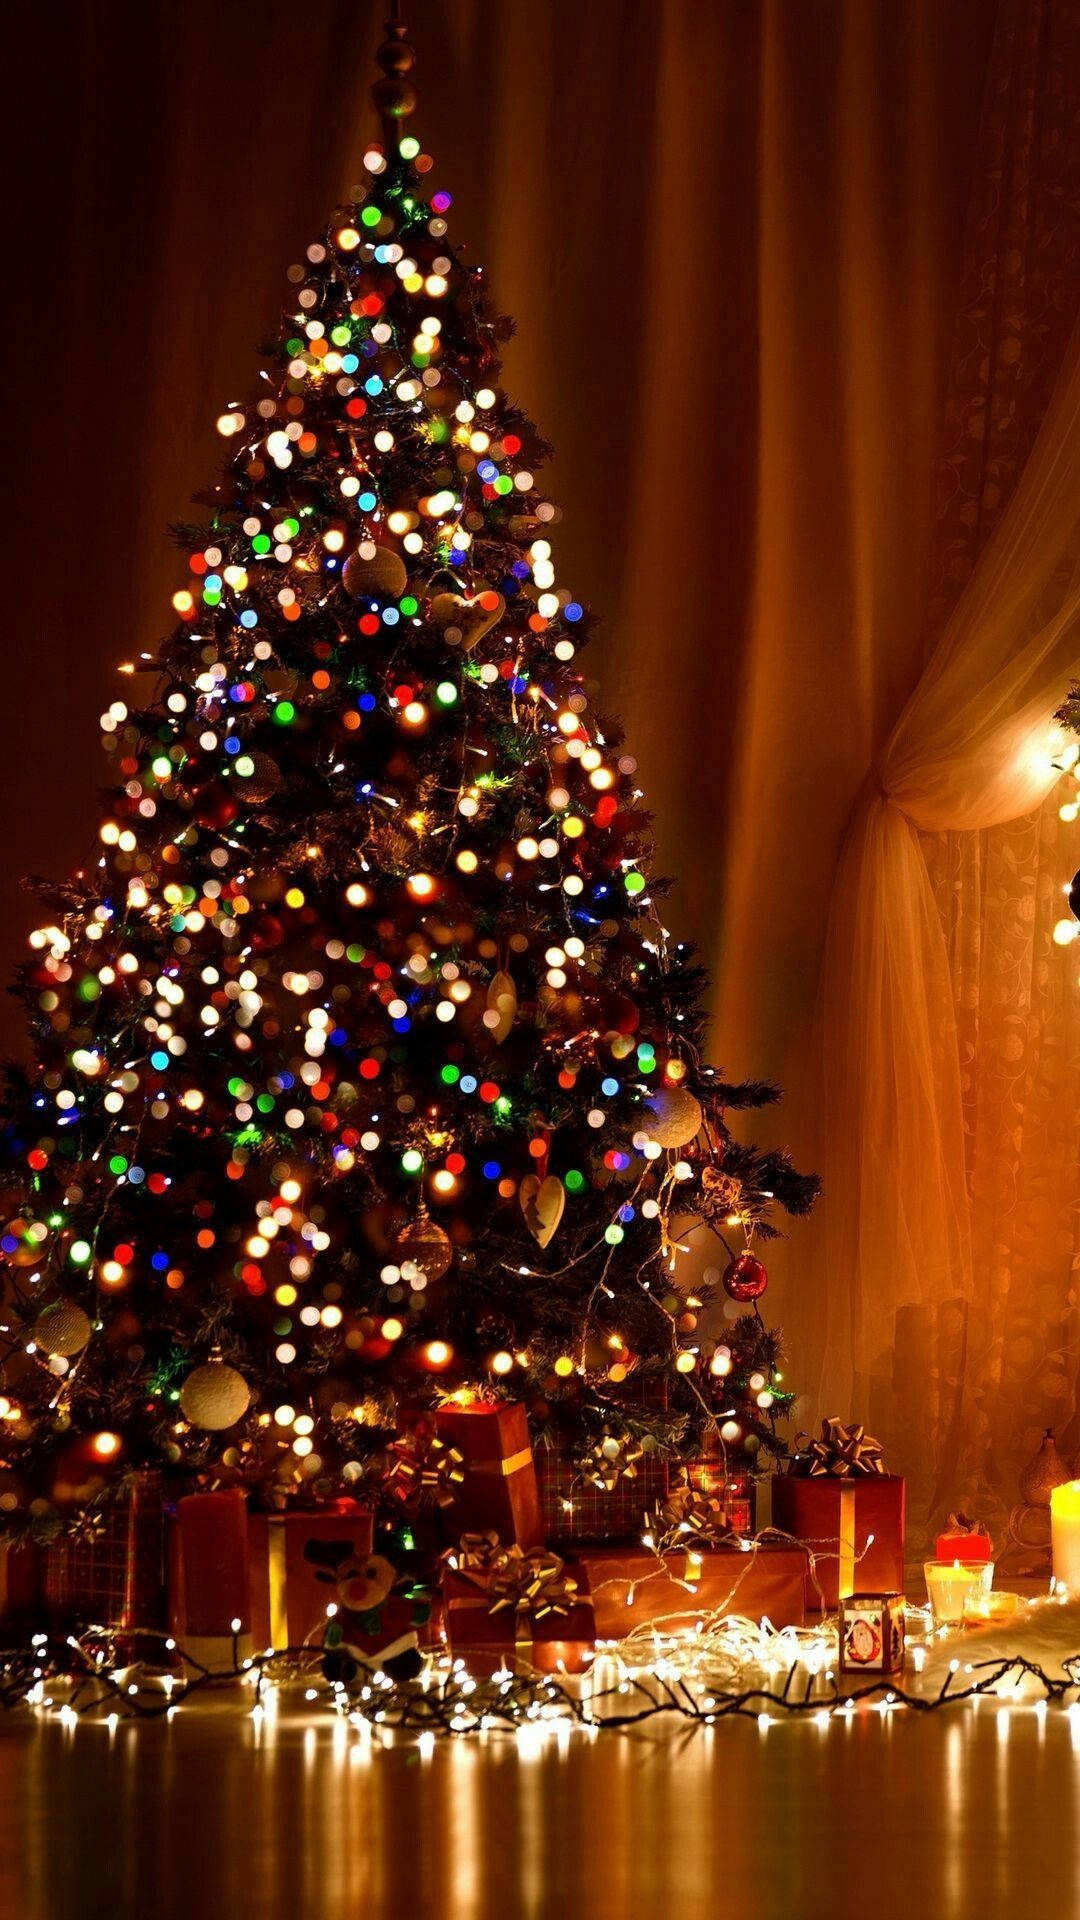 Lucinatalizie Calde E Scintillanti A Forma Di Albero Di Natale Tradizionale Portano Lo Spirito Festivo Al Tuo Telefono In Questa Stagione Delle Vacanze! Sfondo